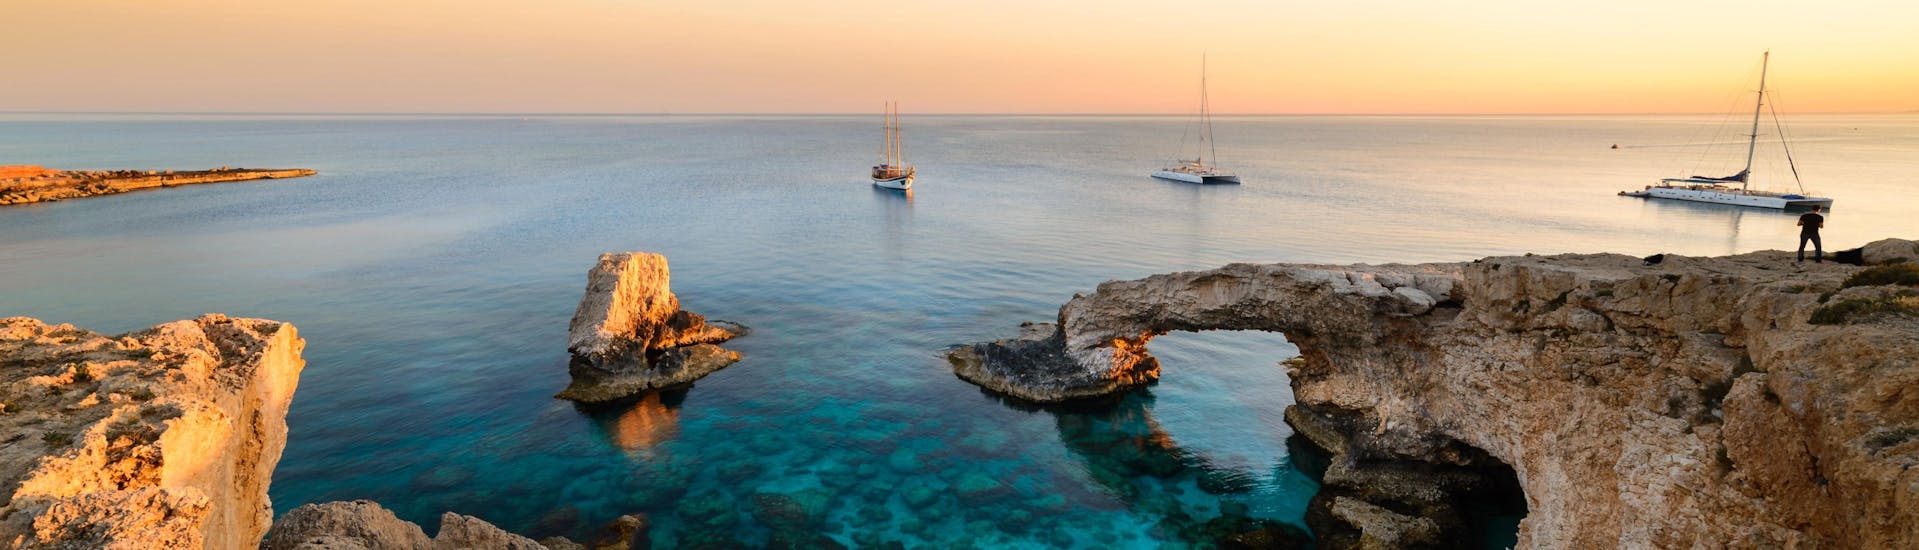 Uitzicht over de Blue Lagoon in de buurt van Cape Greco, een geweldige bestemming voor boottochten in Cyprus.